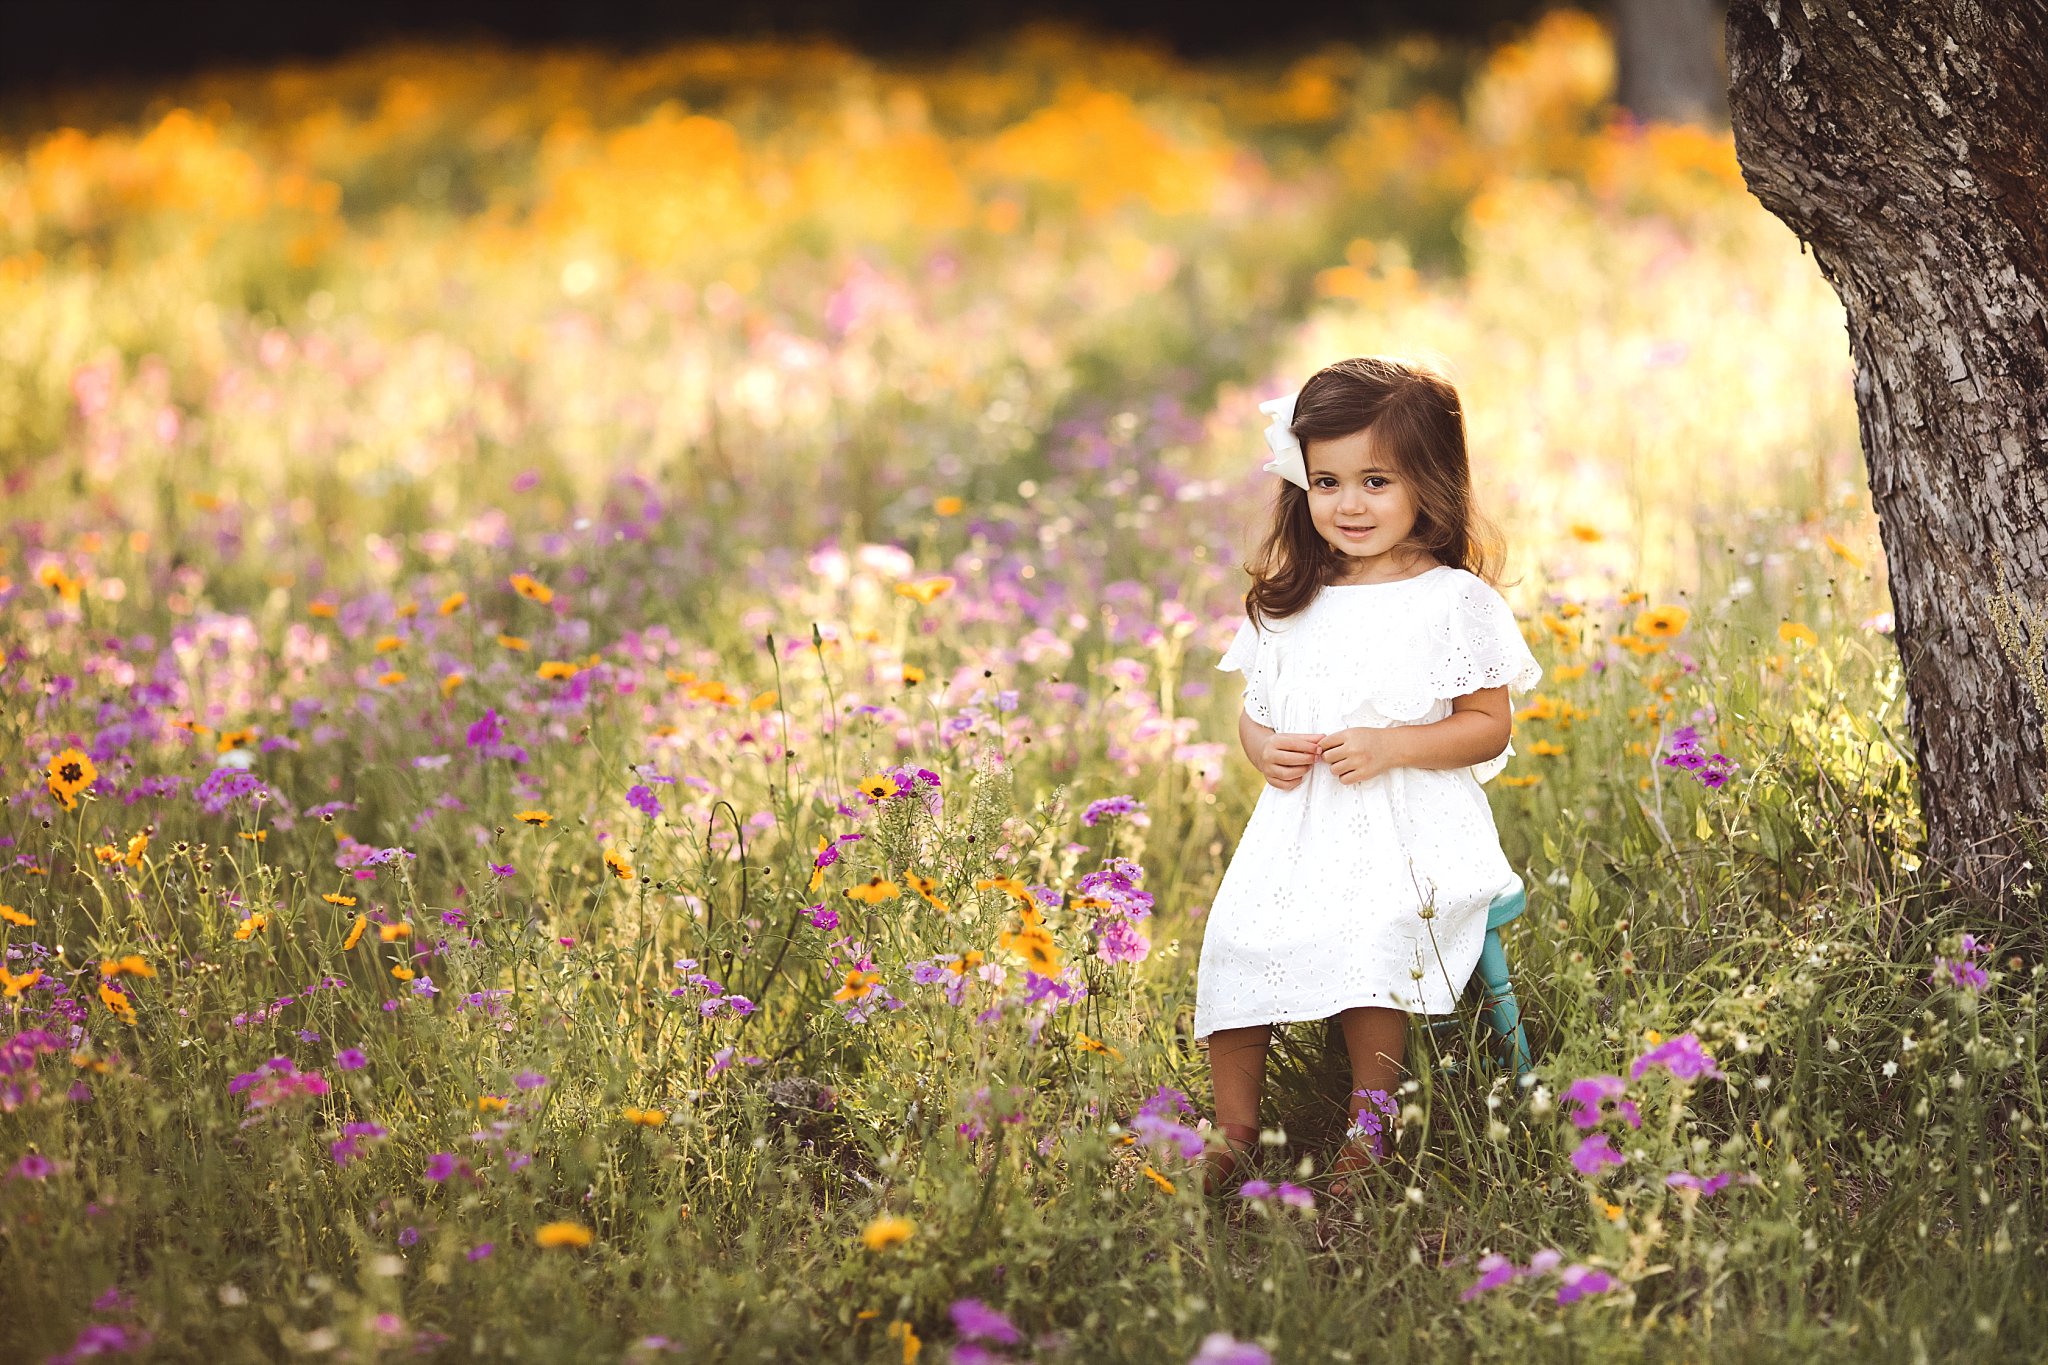 little girl on stool Hampton Flower Field Jacksonville Fl beautiful field of purple and yellow flowers